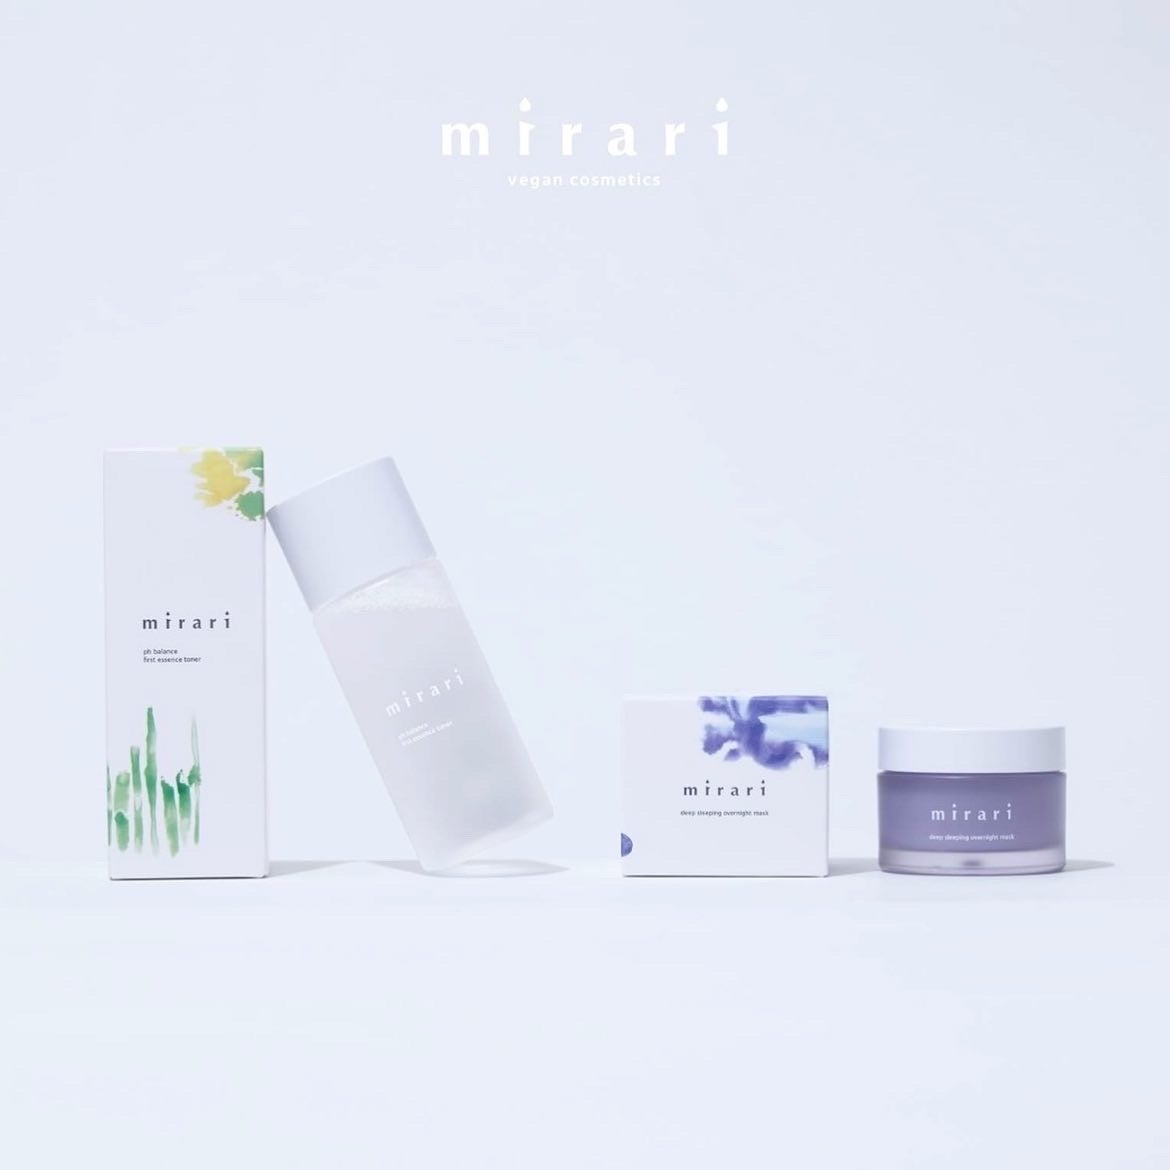 100%ヴィーガンコスメブランド「mirari」より、新商品の先行発売を開始。「Trueberry」とのコラボレーションも実施！